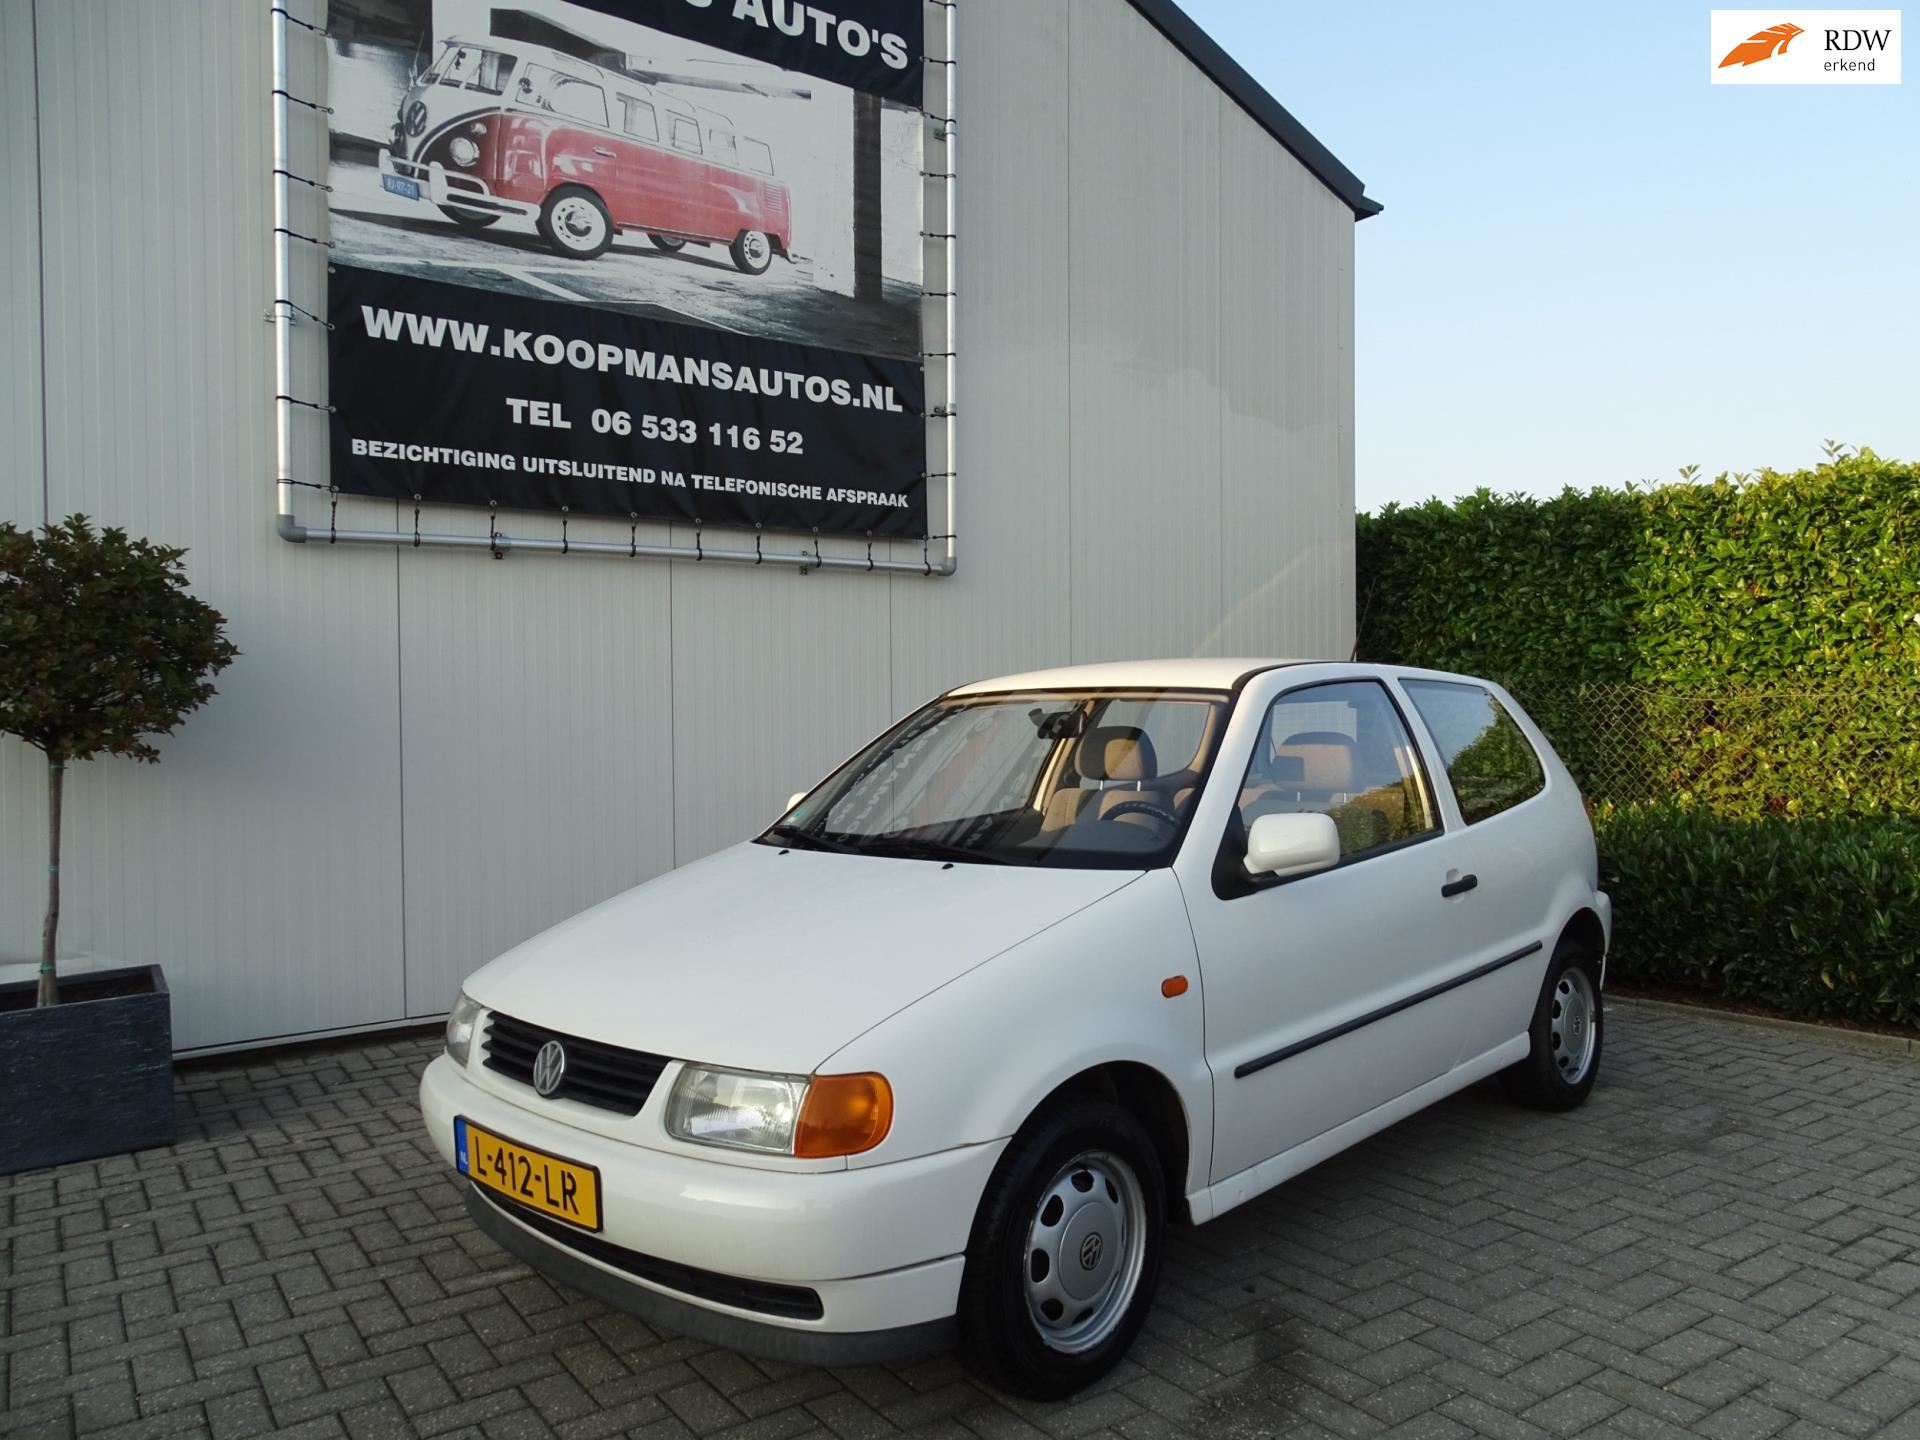 duizelig over aflevering Volkswagen Polo - 1.6 automaat Benzine uit 1998 - www.koopmansautos.nl